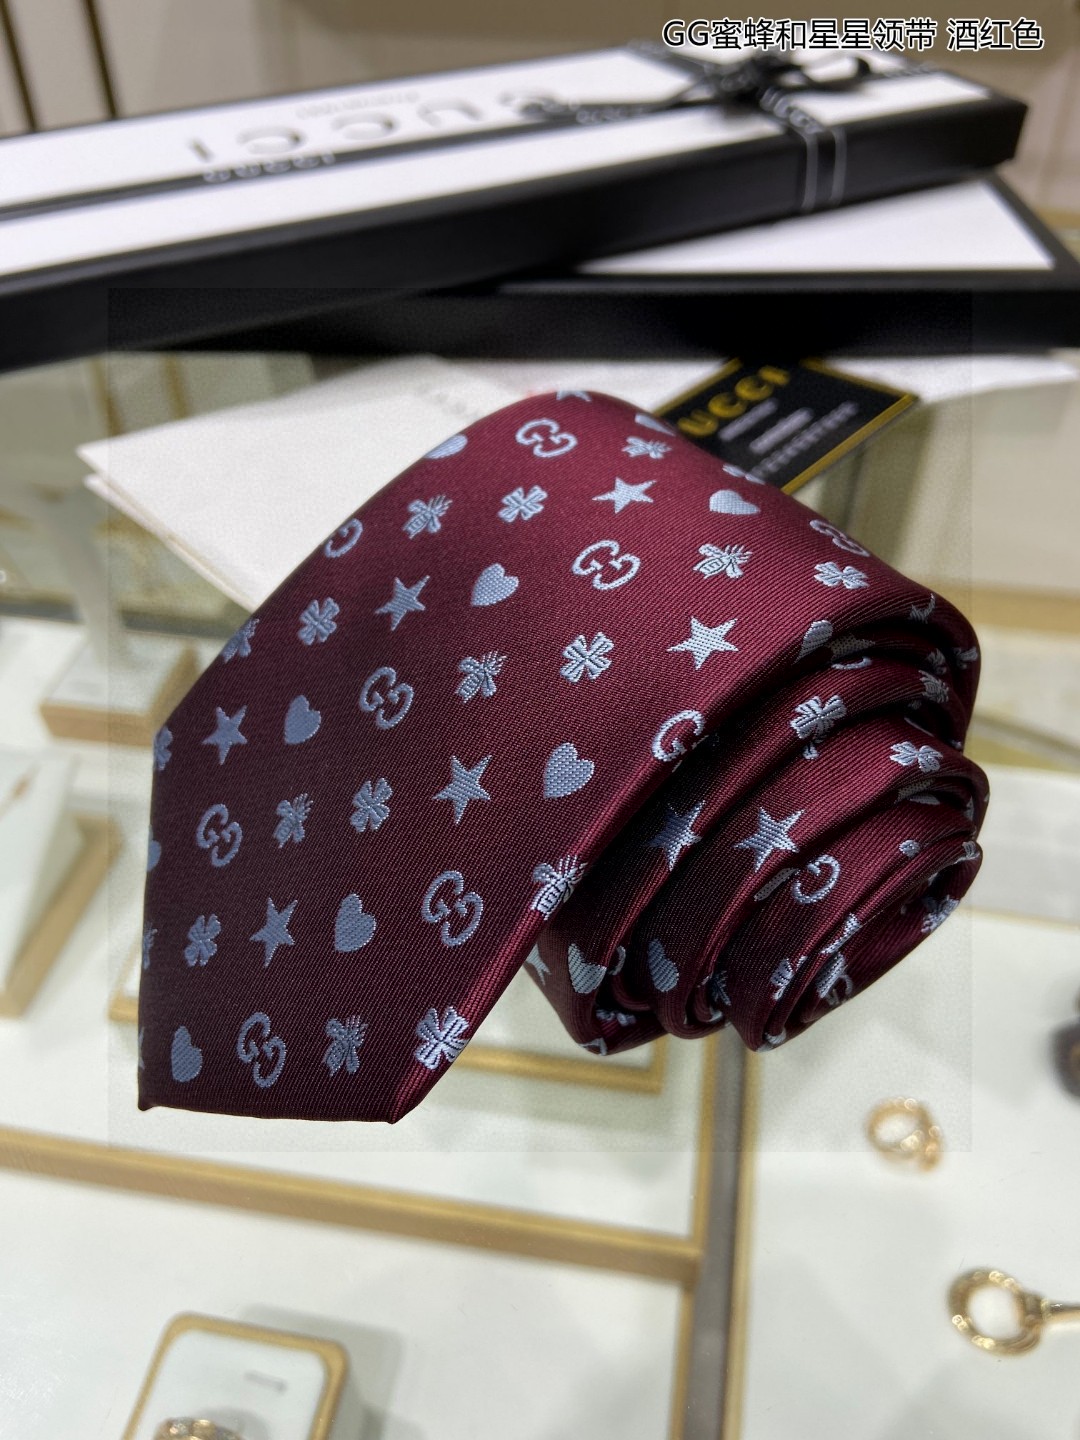 G家专柜新款男士领带GG蜜蜂和星星领带稀有采用经典小GLOGO提花展现精湛手工与时尚优雅的理想选择这款领